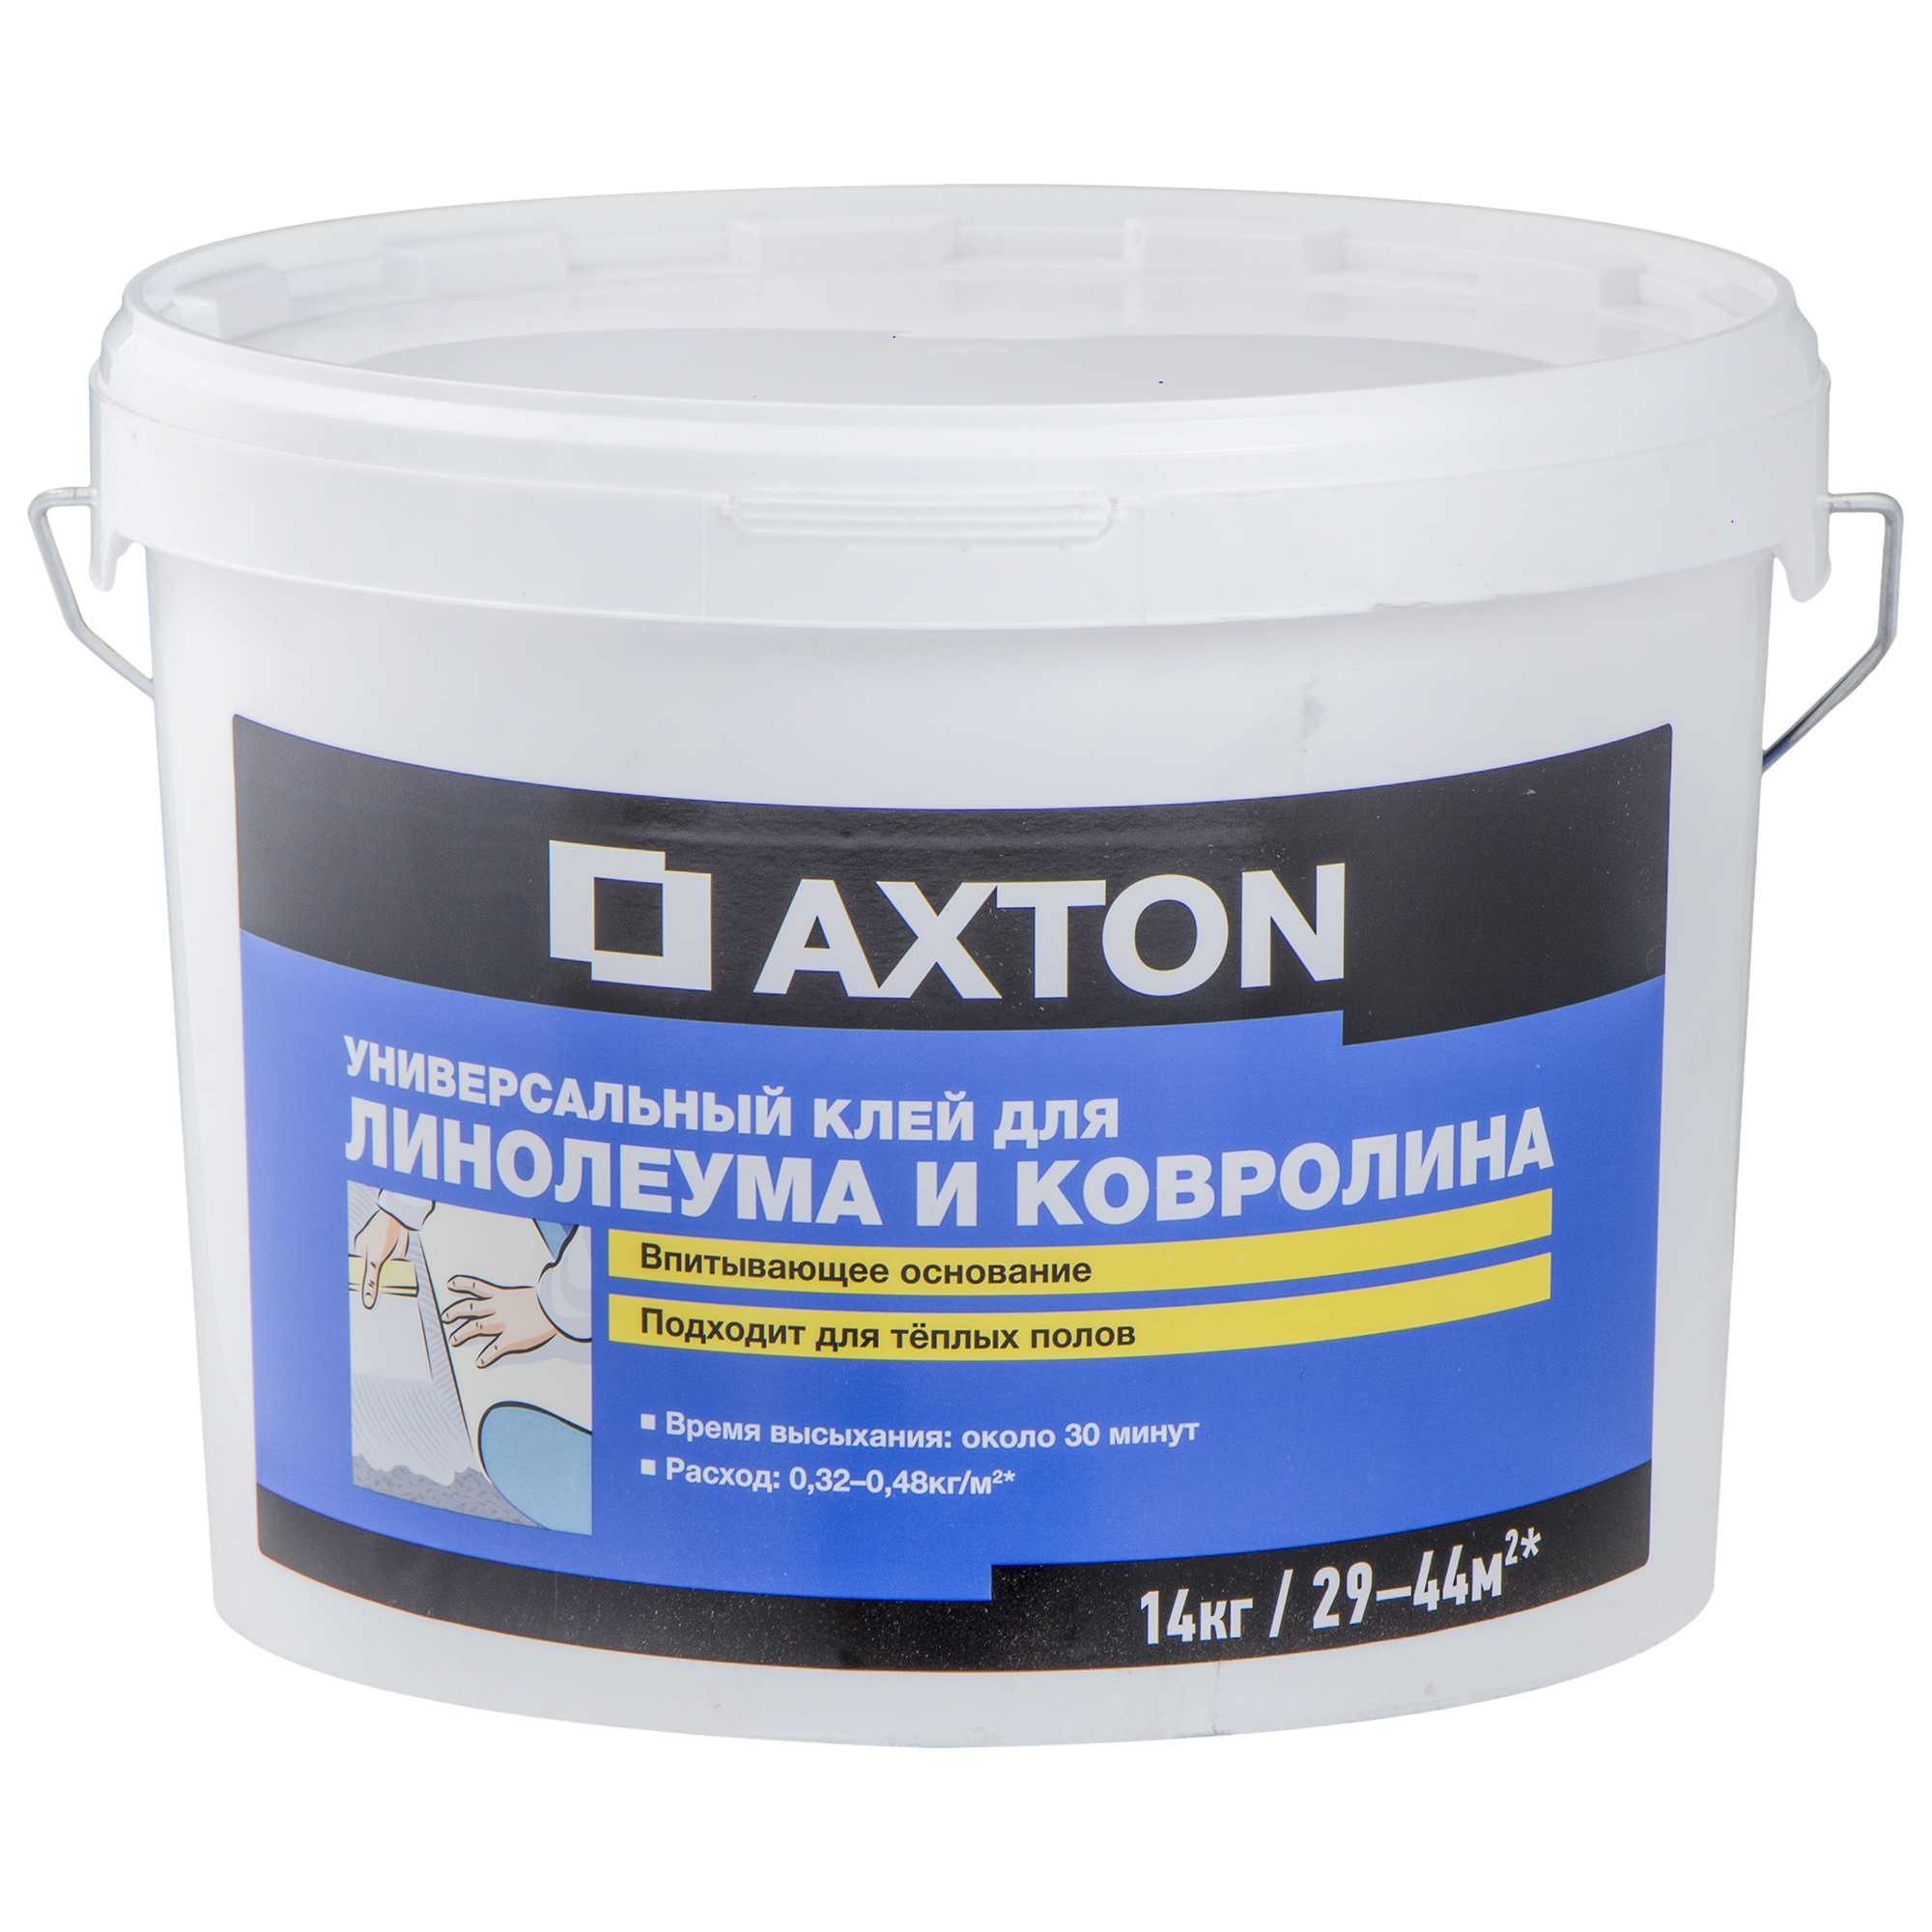  Axton универсальный для линолеума и ковролина, 14 кг в Хабаровске .